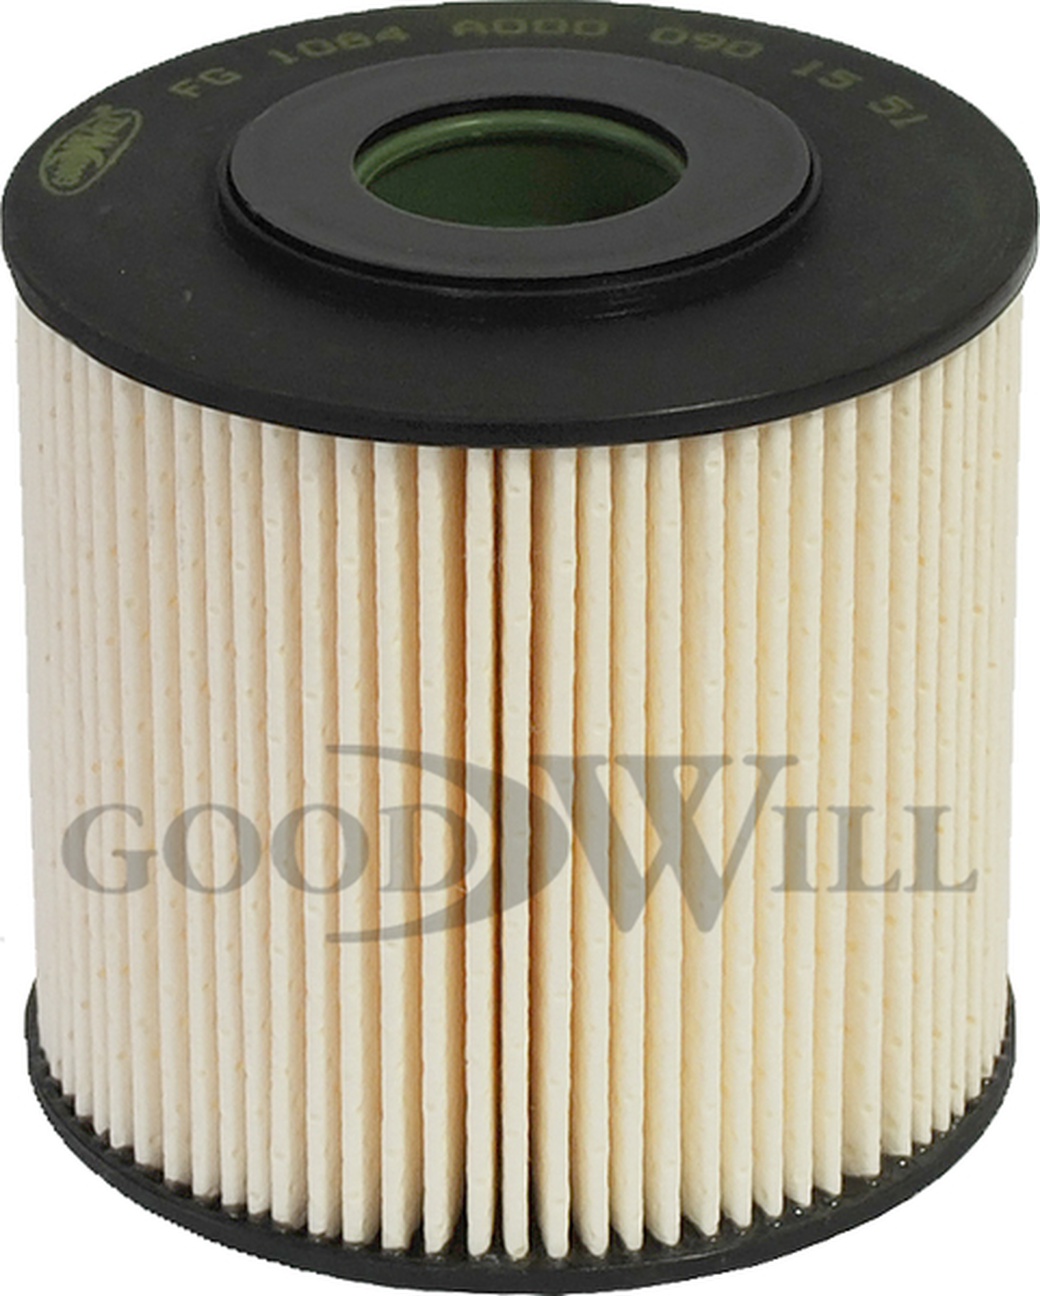 Фильтр топливный GoodWill FG1084 для SETRA, MB,NEOPLAN фото